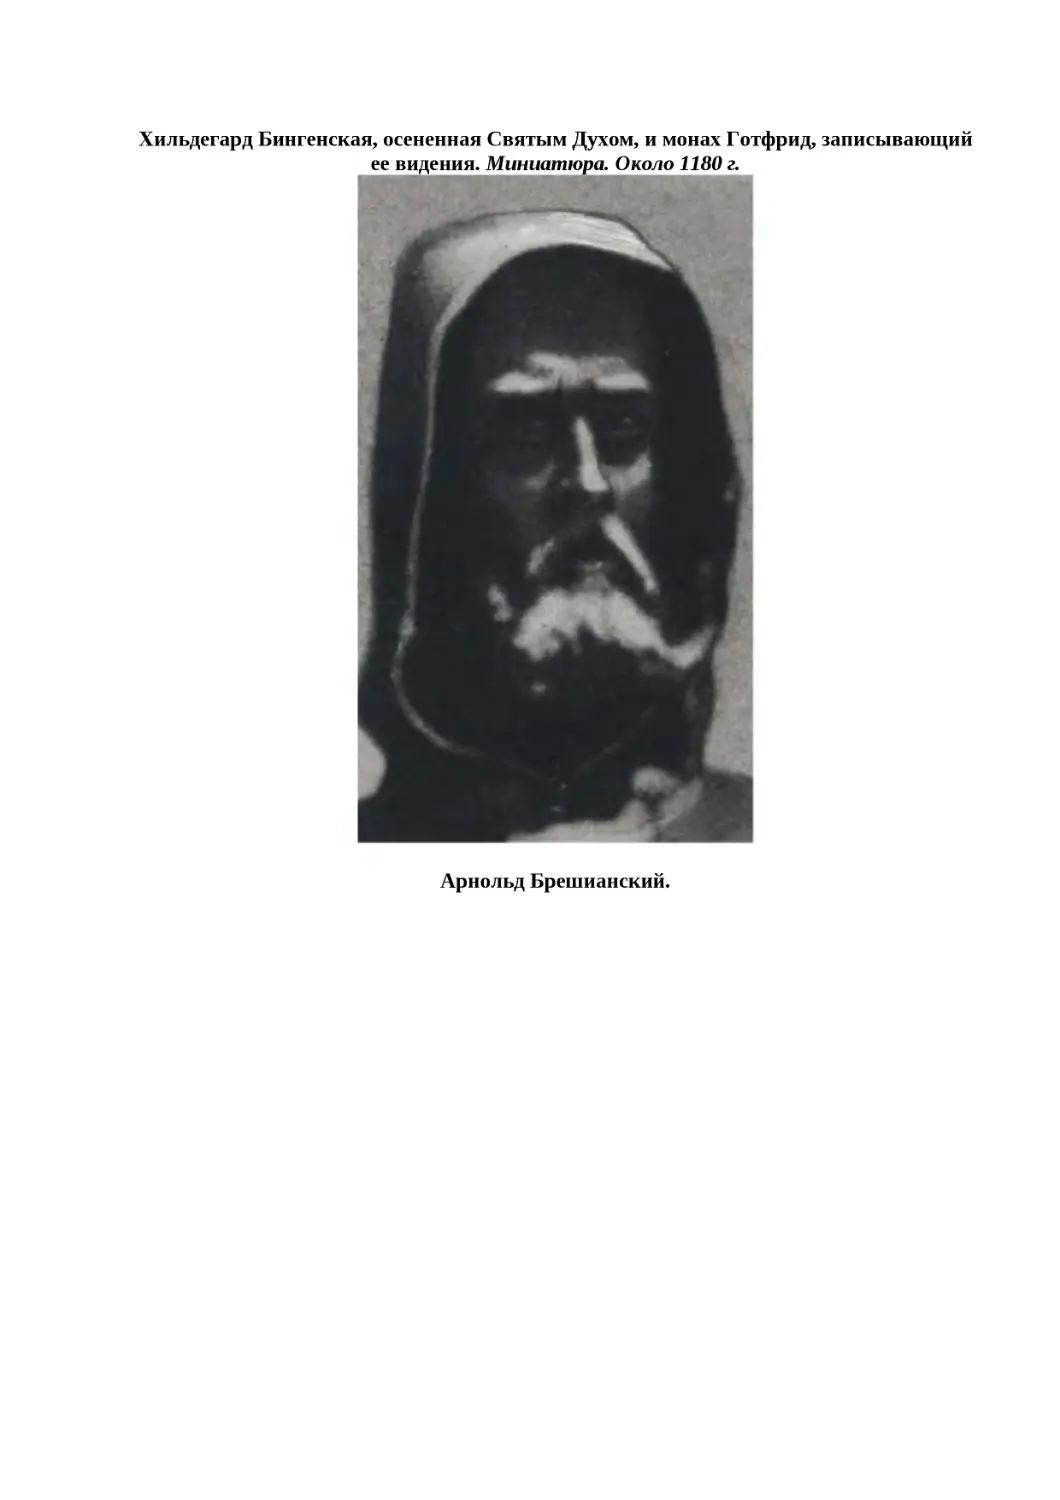 ﻿Хильдегард Бингенская, осененная Святым Духом, и монах Готфрид, записывающий ее видения. Миниатюра. Около 1180 г
"
﻿Арнольд Брешианский